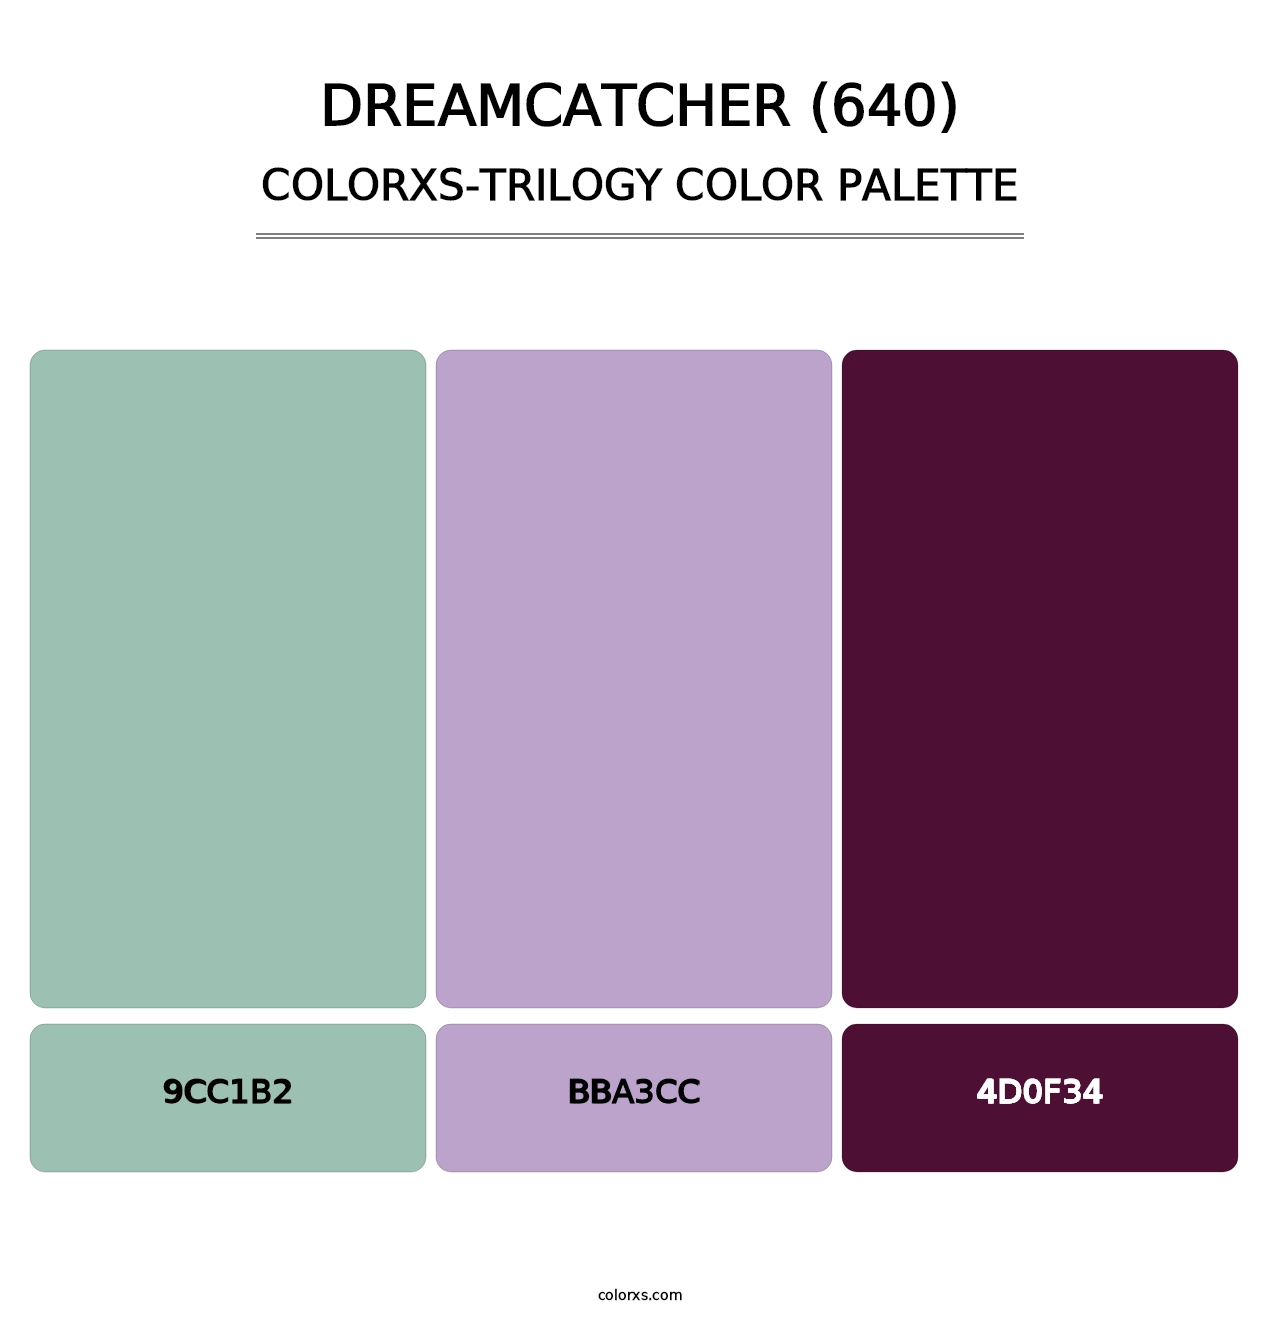 Dreamcatcher (640) - Colorxs Trilogy Palette